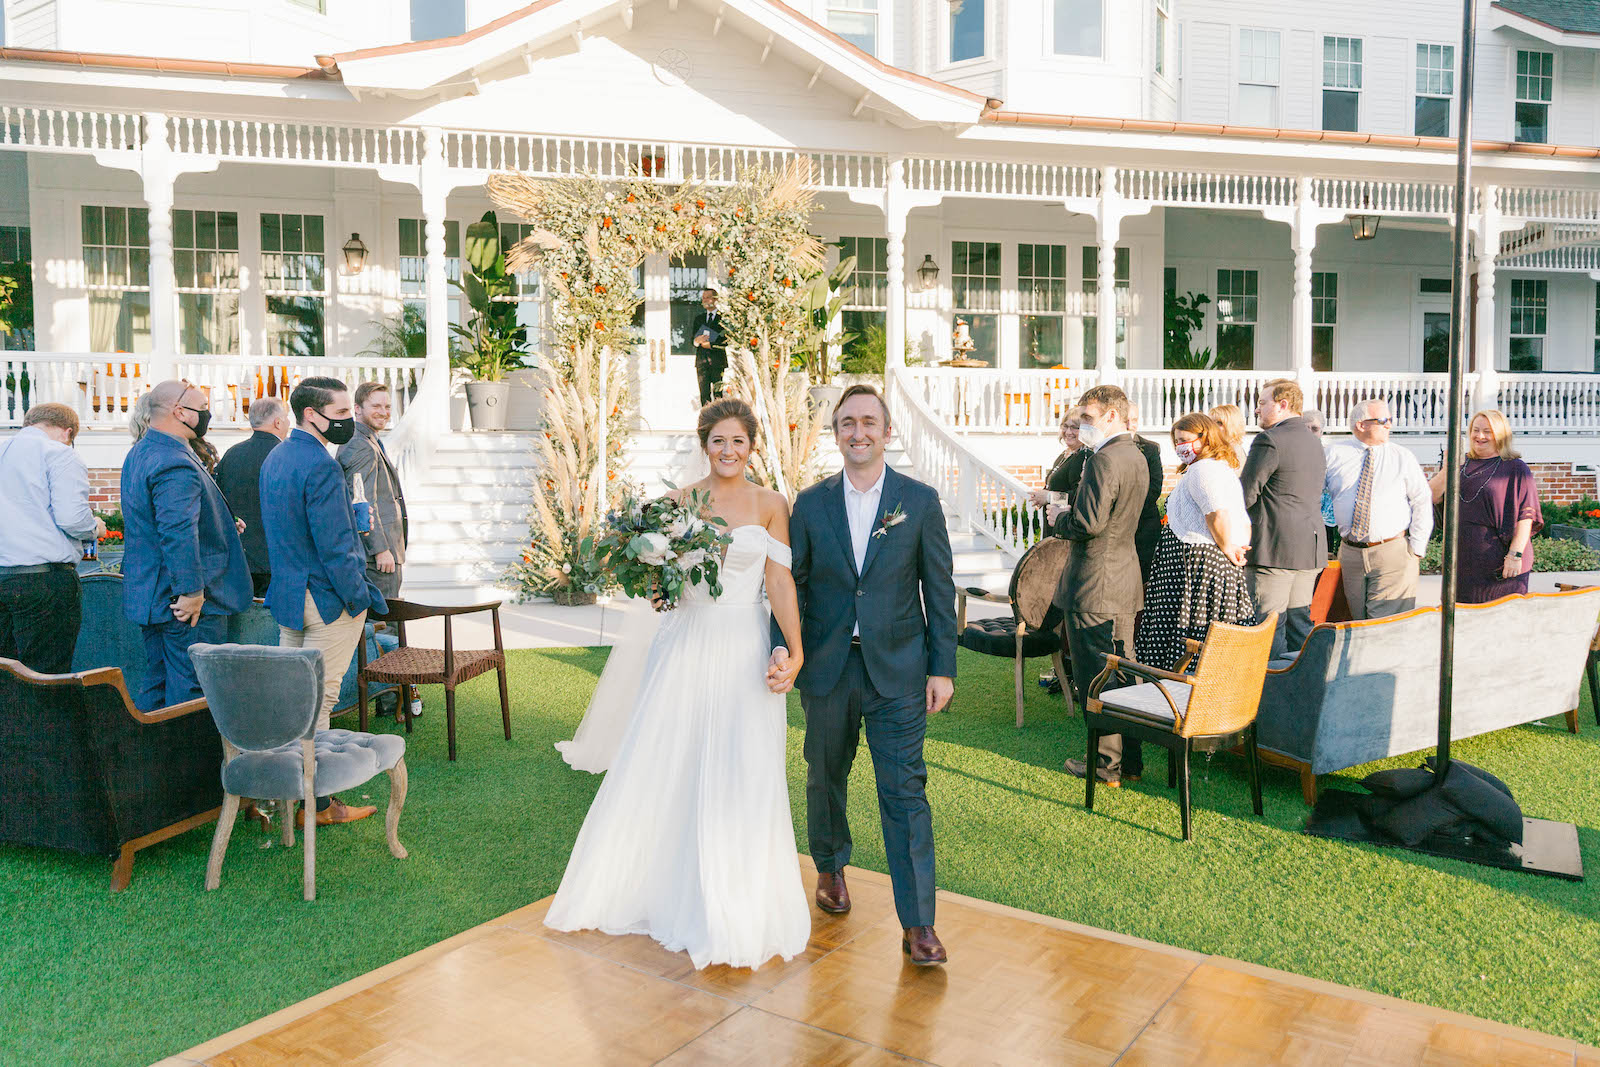 Boho Garden Wedding Ceremony, Bride and Groom Exiting Wedding | Tampa Bay Wedding Planner Parties A'la Carte | Florida Wedding Venue Belleview Inn